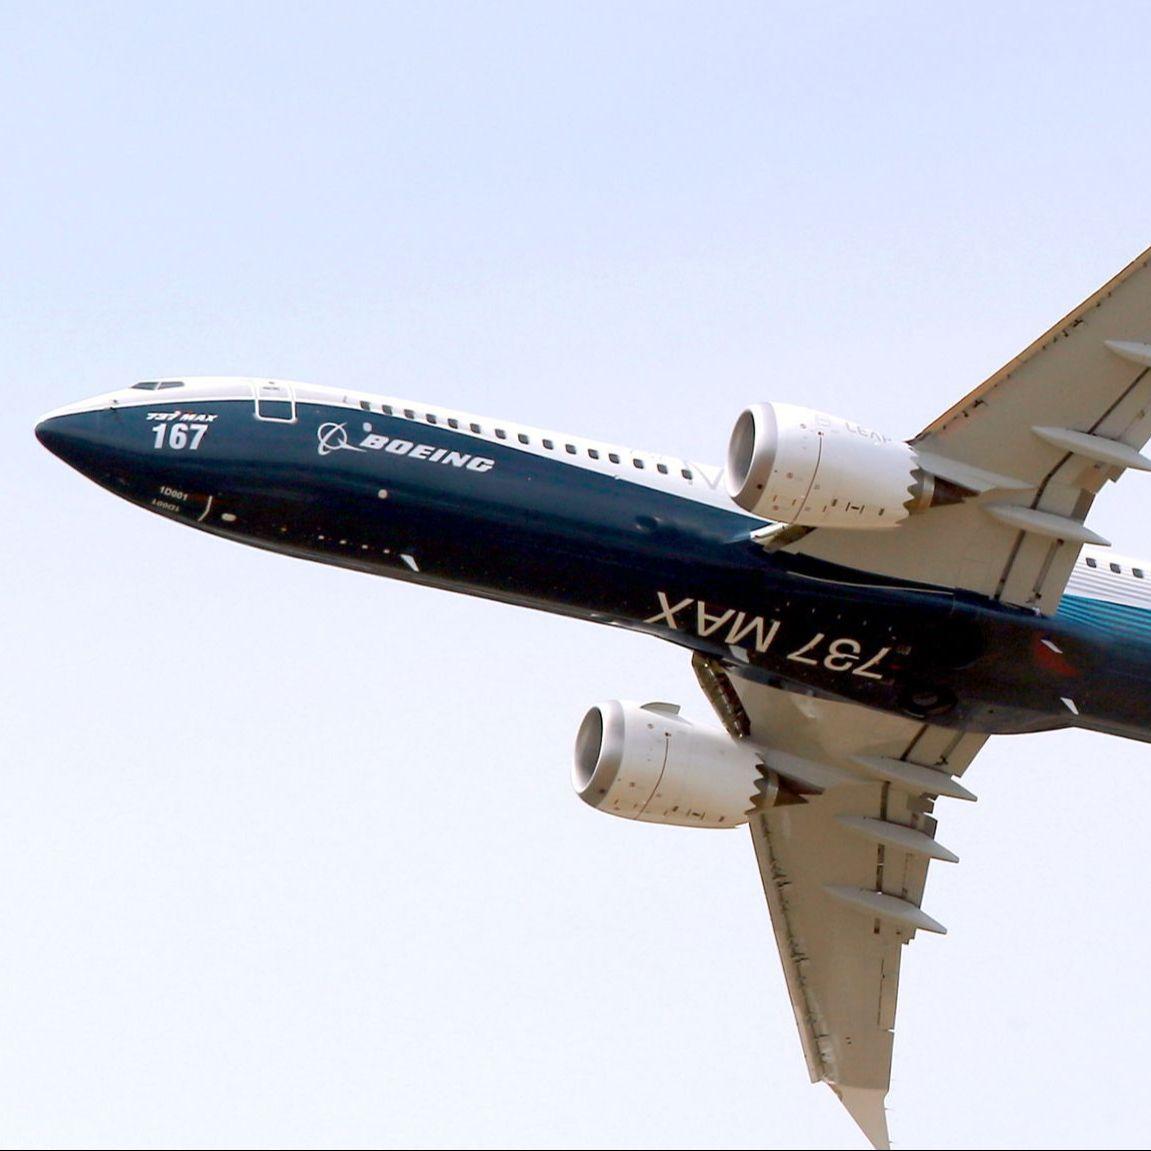 Avionu tokom leta otpao dio krila: Sve učestaliji incidenti sa Boeing 737